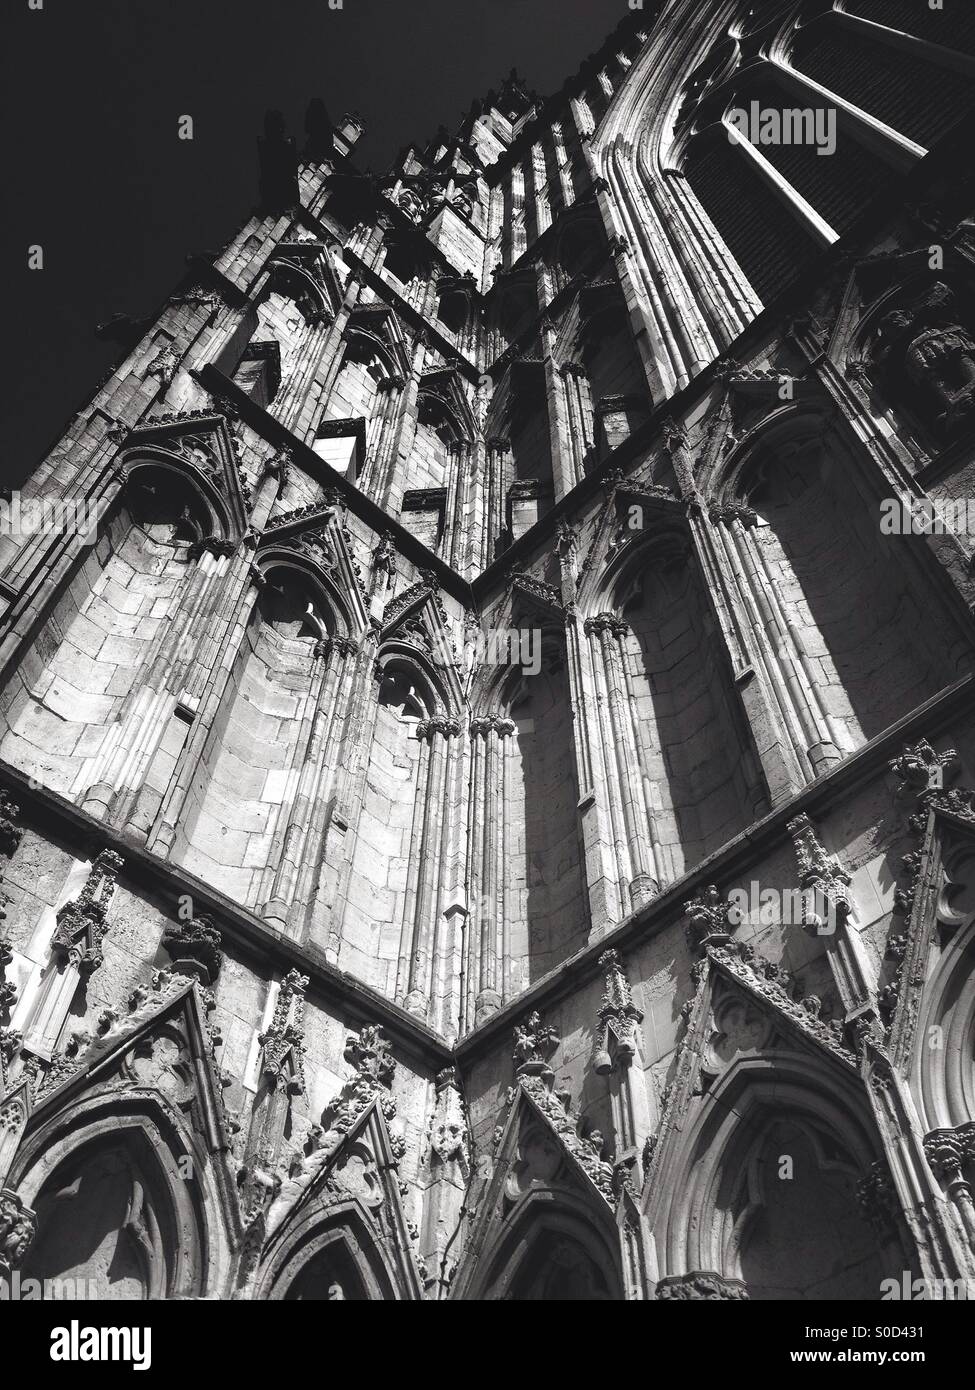 La cathédrale de York à partir d'un angle faible Banque D'Images